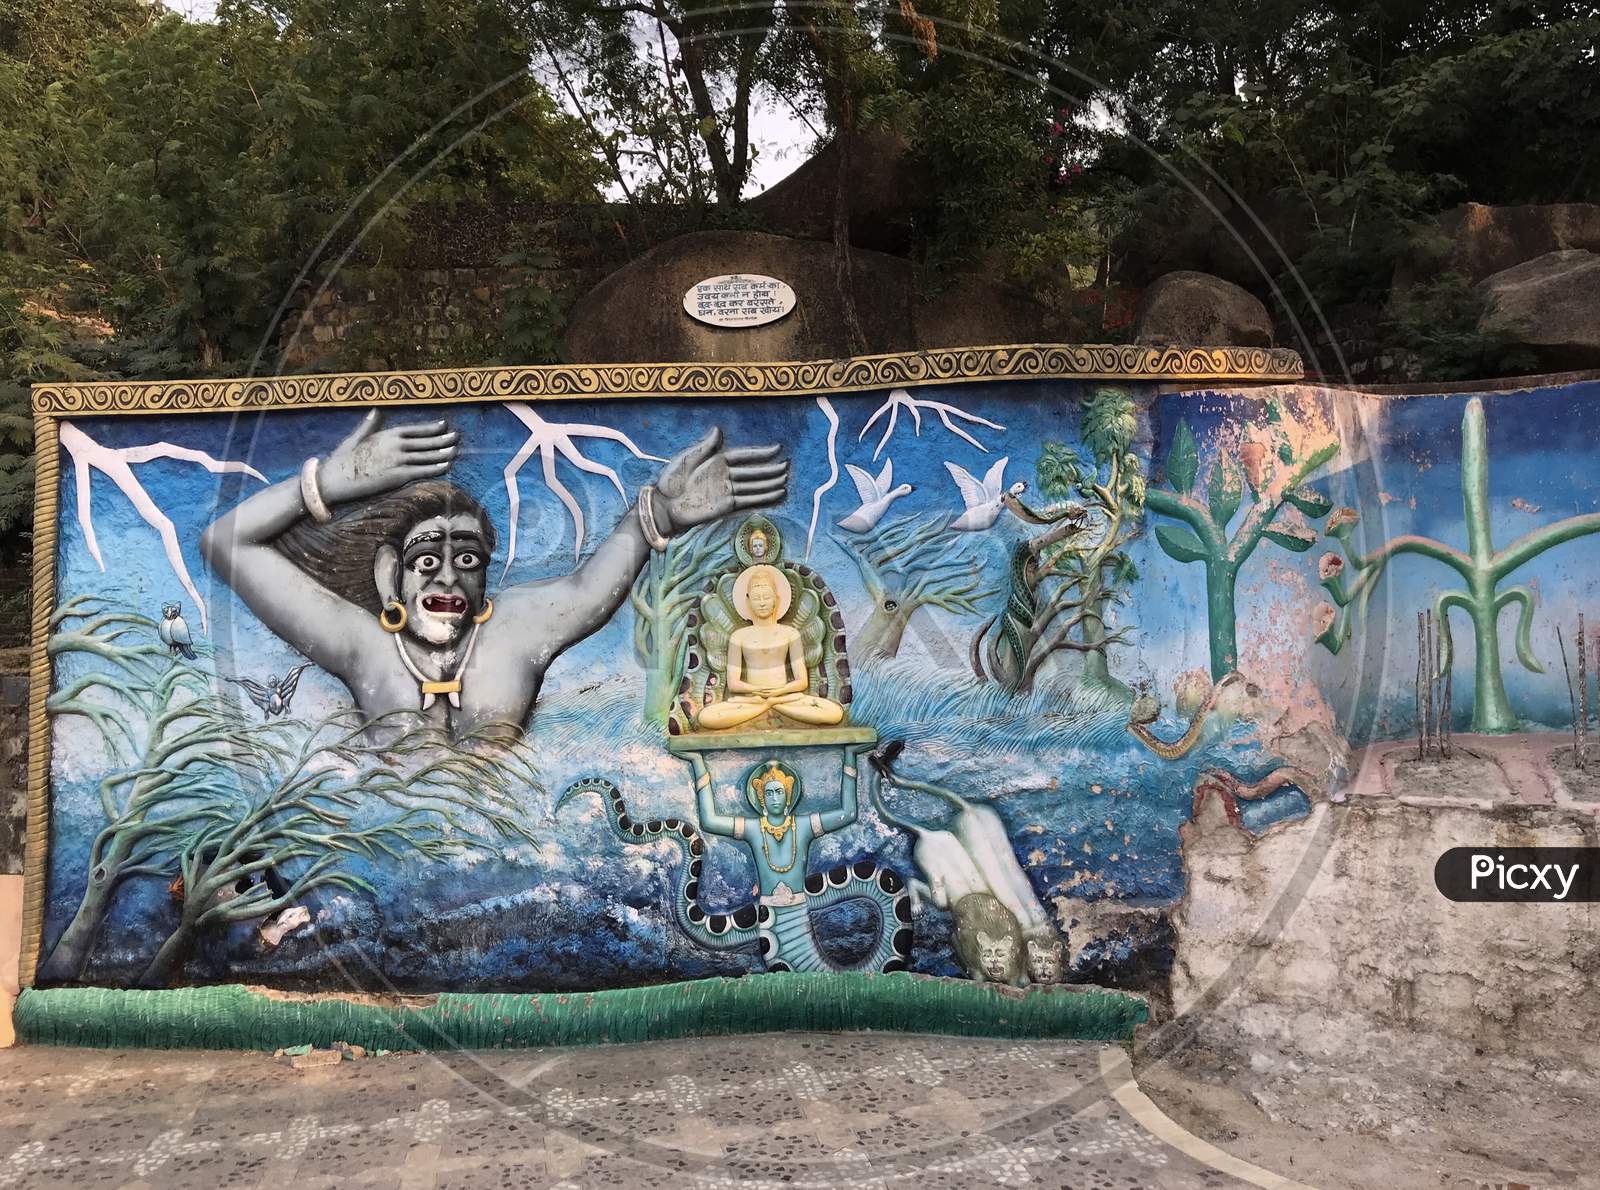 Jabalpur, Madhya Pradesh/India : Wall painting at Pisanhari Ki Madhiya, Jabalpur